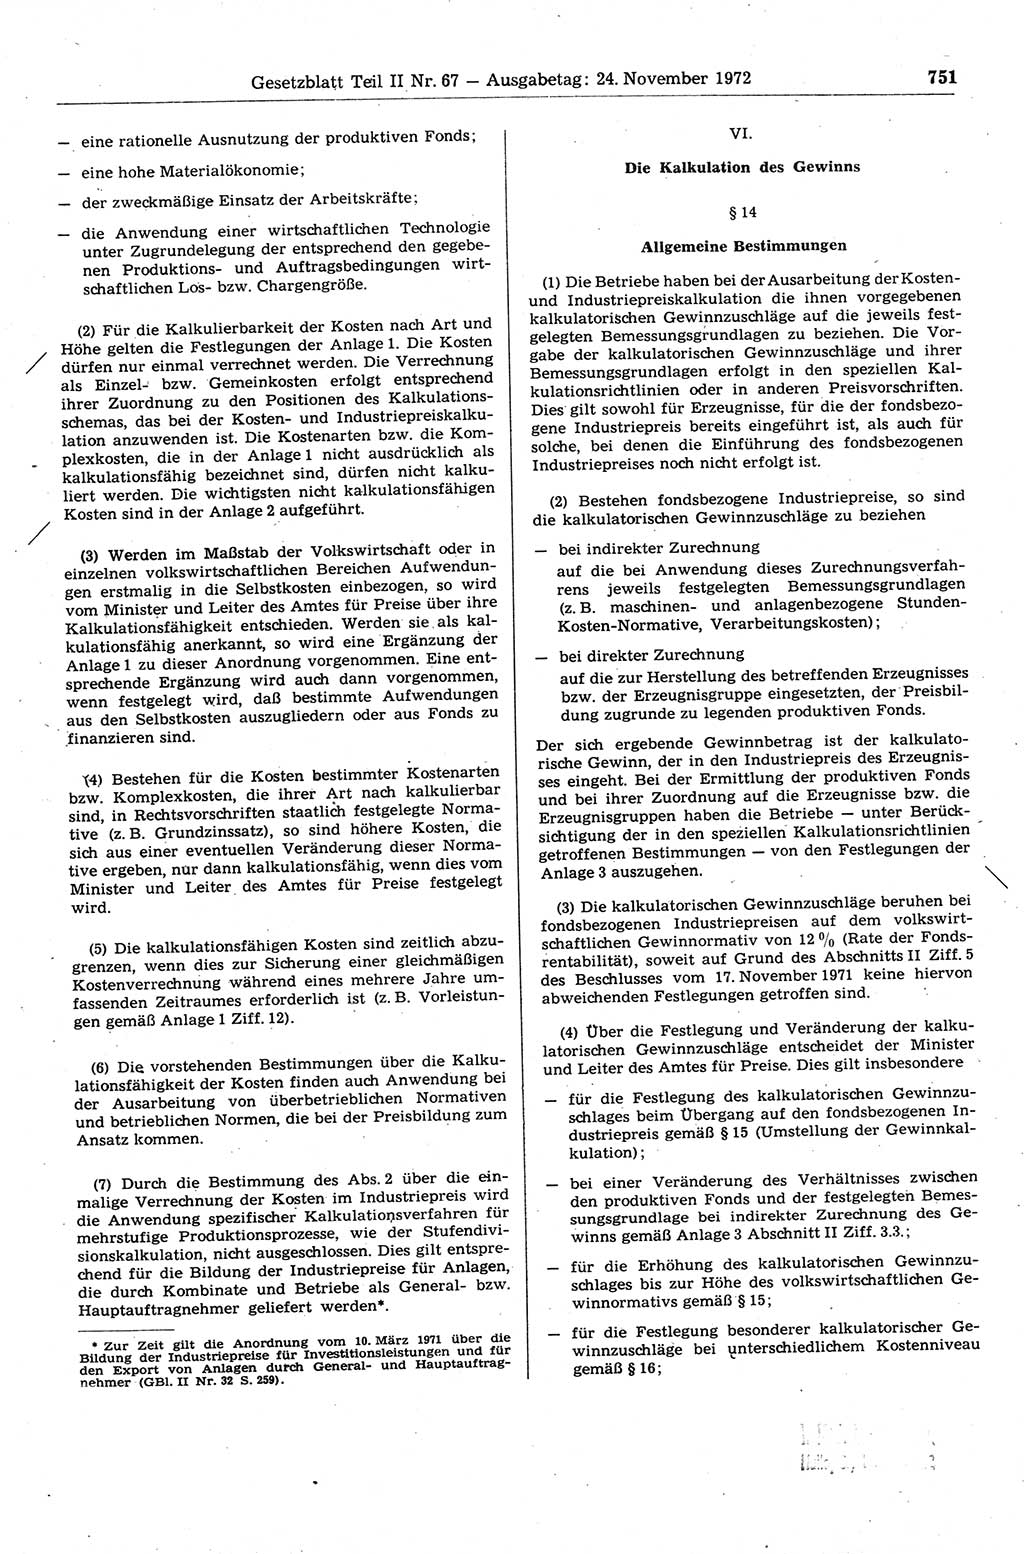 Gesetzblatt (GBl.) der Deutschen Demokratischen Republik (DDR) Teil ⅠⅠ 1972, Seite 751 (GBl. DDR ⅠⅠ 1972, S. 751)